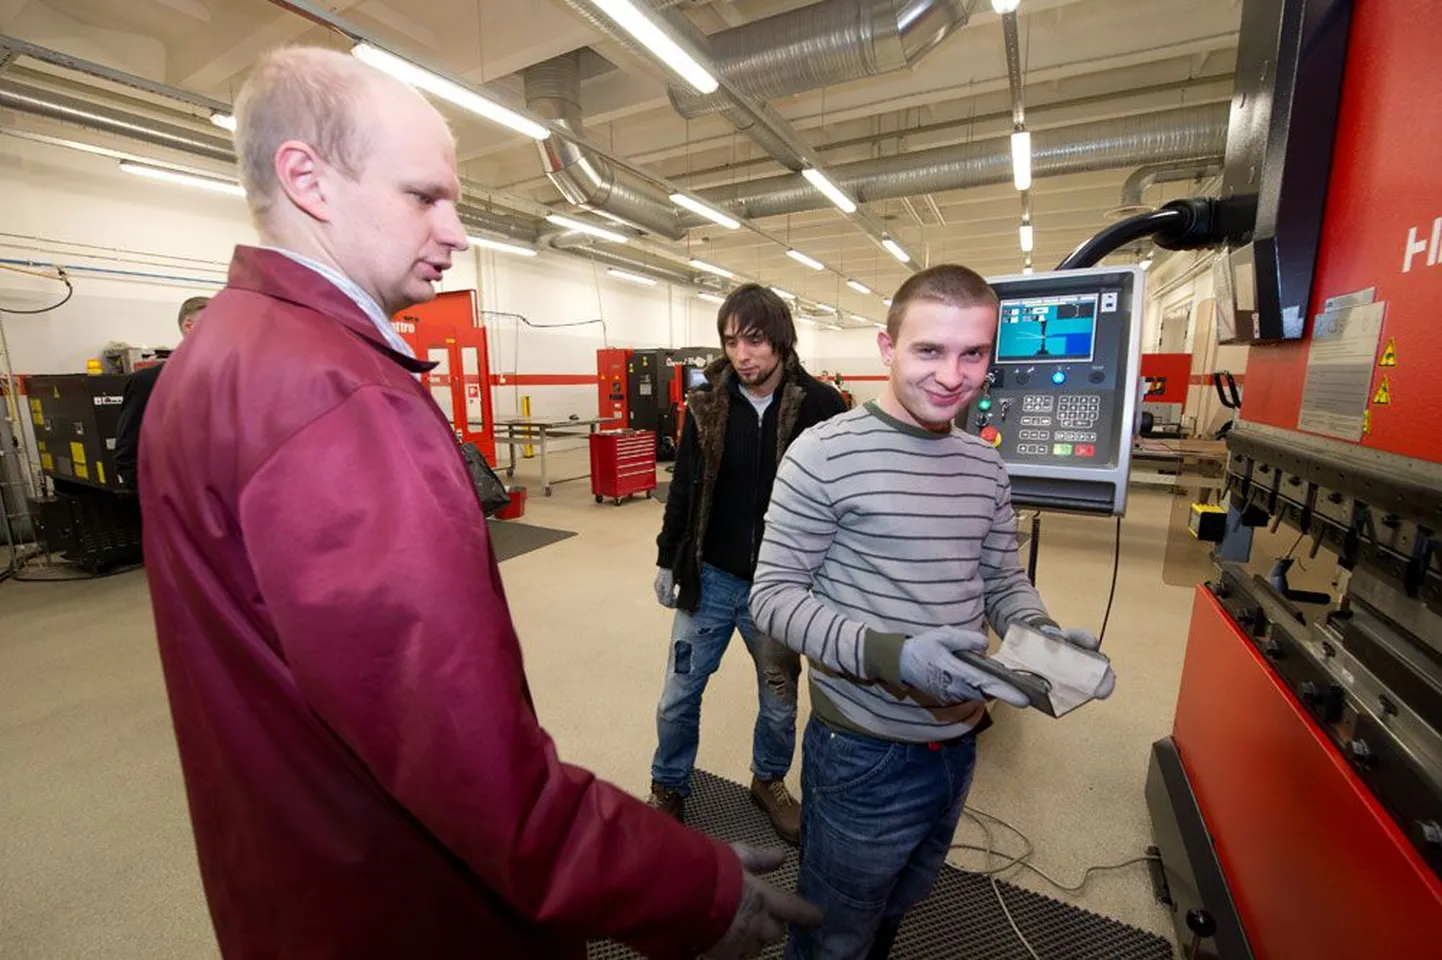 Õpetaja Aleksei Saareväli (vasakul) õpetab tööstushariduskeskuses töötuid noori metallitööpingil töötama. Pildil asetab Sergei Gritsan (24) lehtmetalli masina alla ja Alexey Ogay (25) vaatab pealt. Tegu on hästimakstud erialaga, kuhu pidevalt inimesi vajatakse.